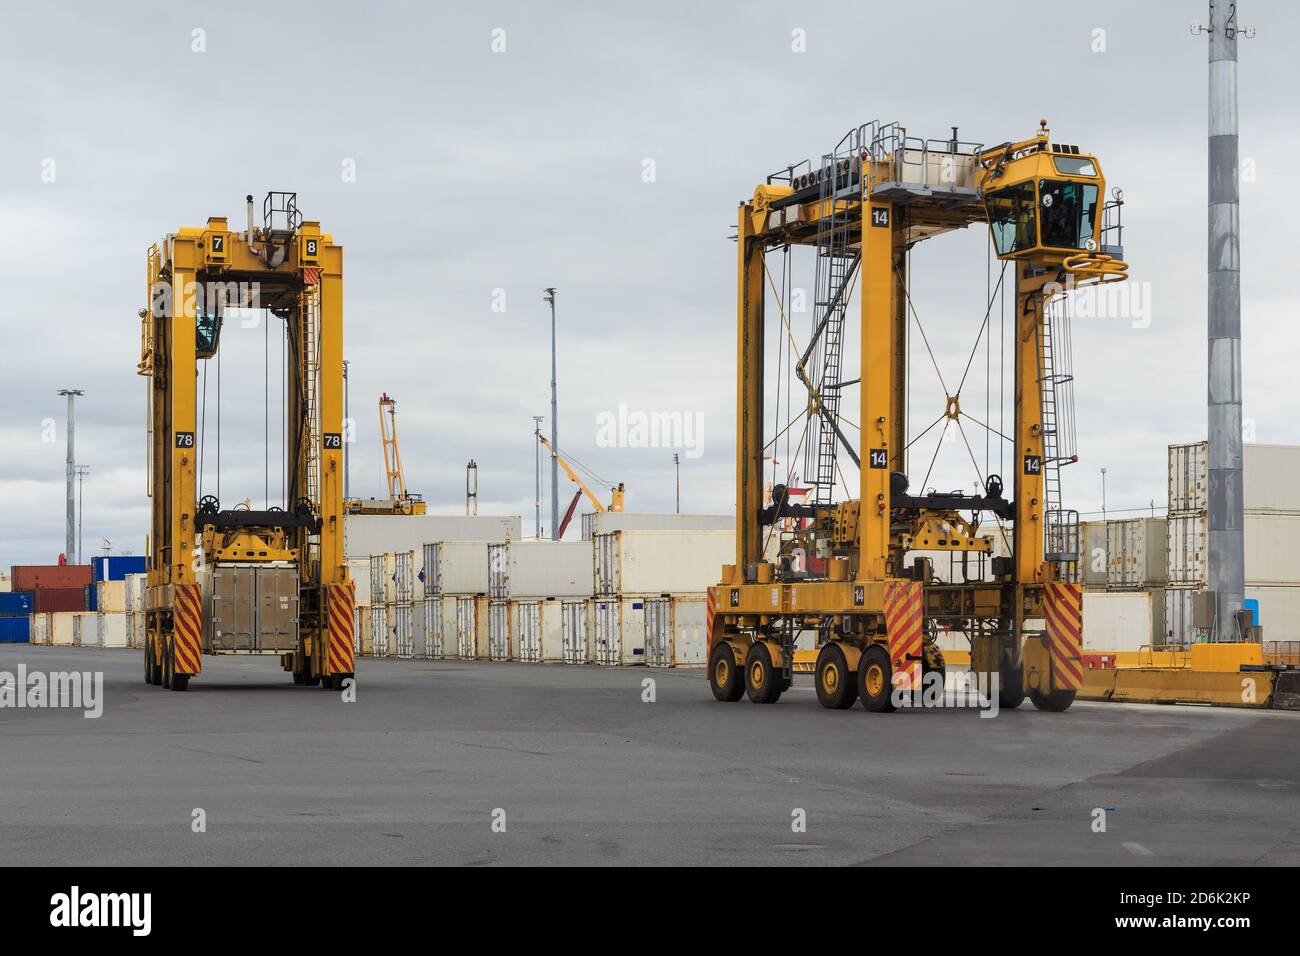 Zwei Straddle Carrier, riesige Fahrzeuge für den Transport von Frachtcontainern, an einem Hafen Stockfoto